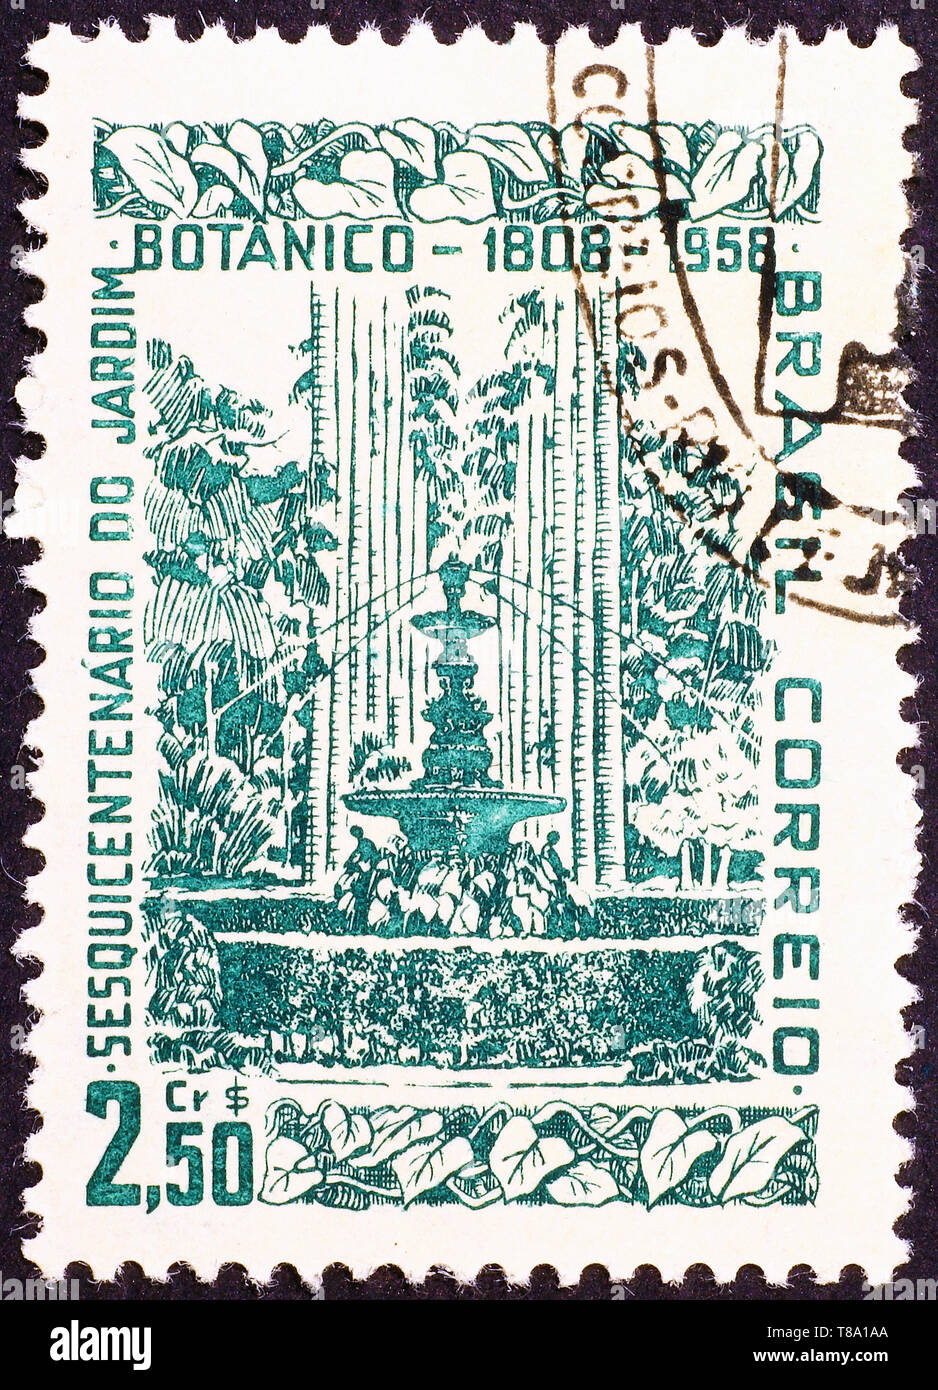 OLD BRAZIL BRASIL POSTCARD RIO DE JANEIRO AVEN BEIRA-MAR PASSEIO PUBLICO CA  1910